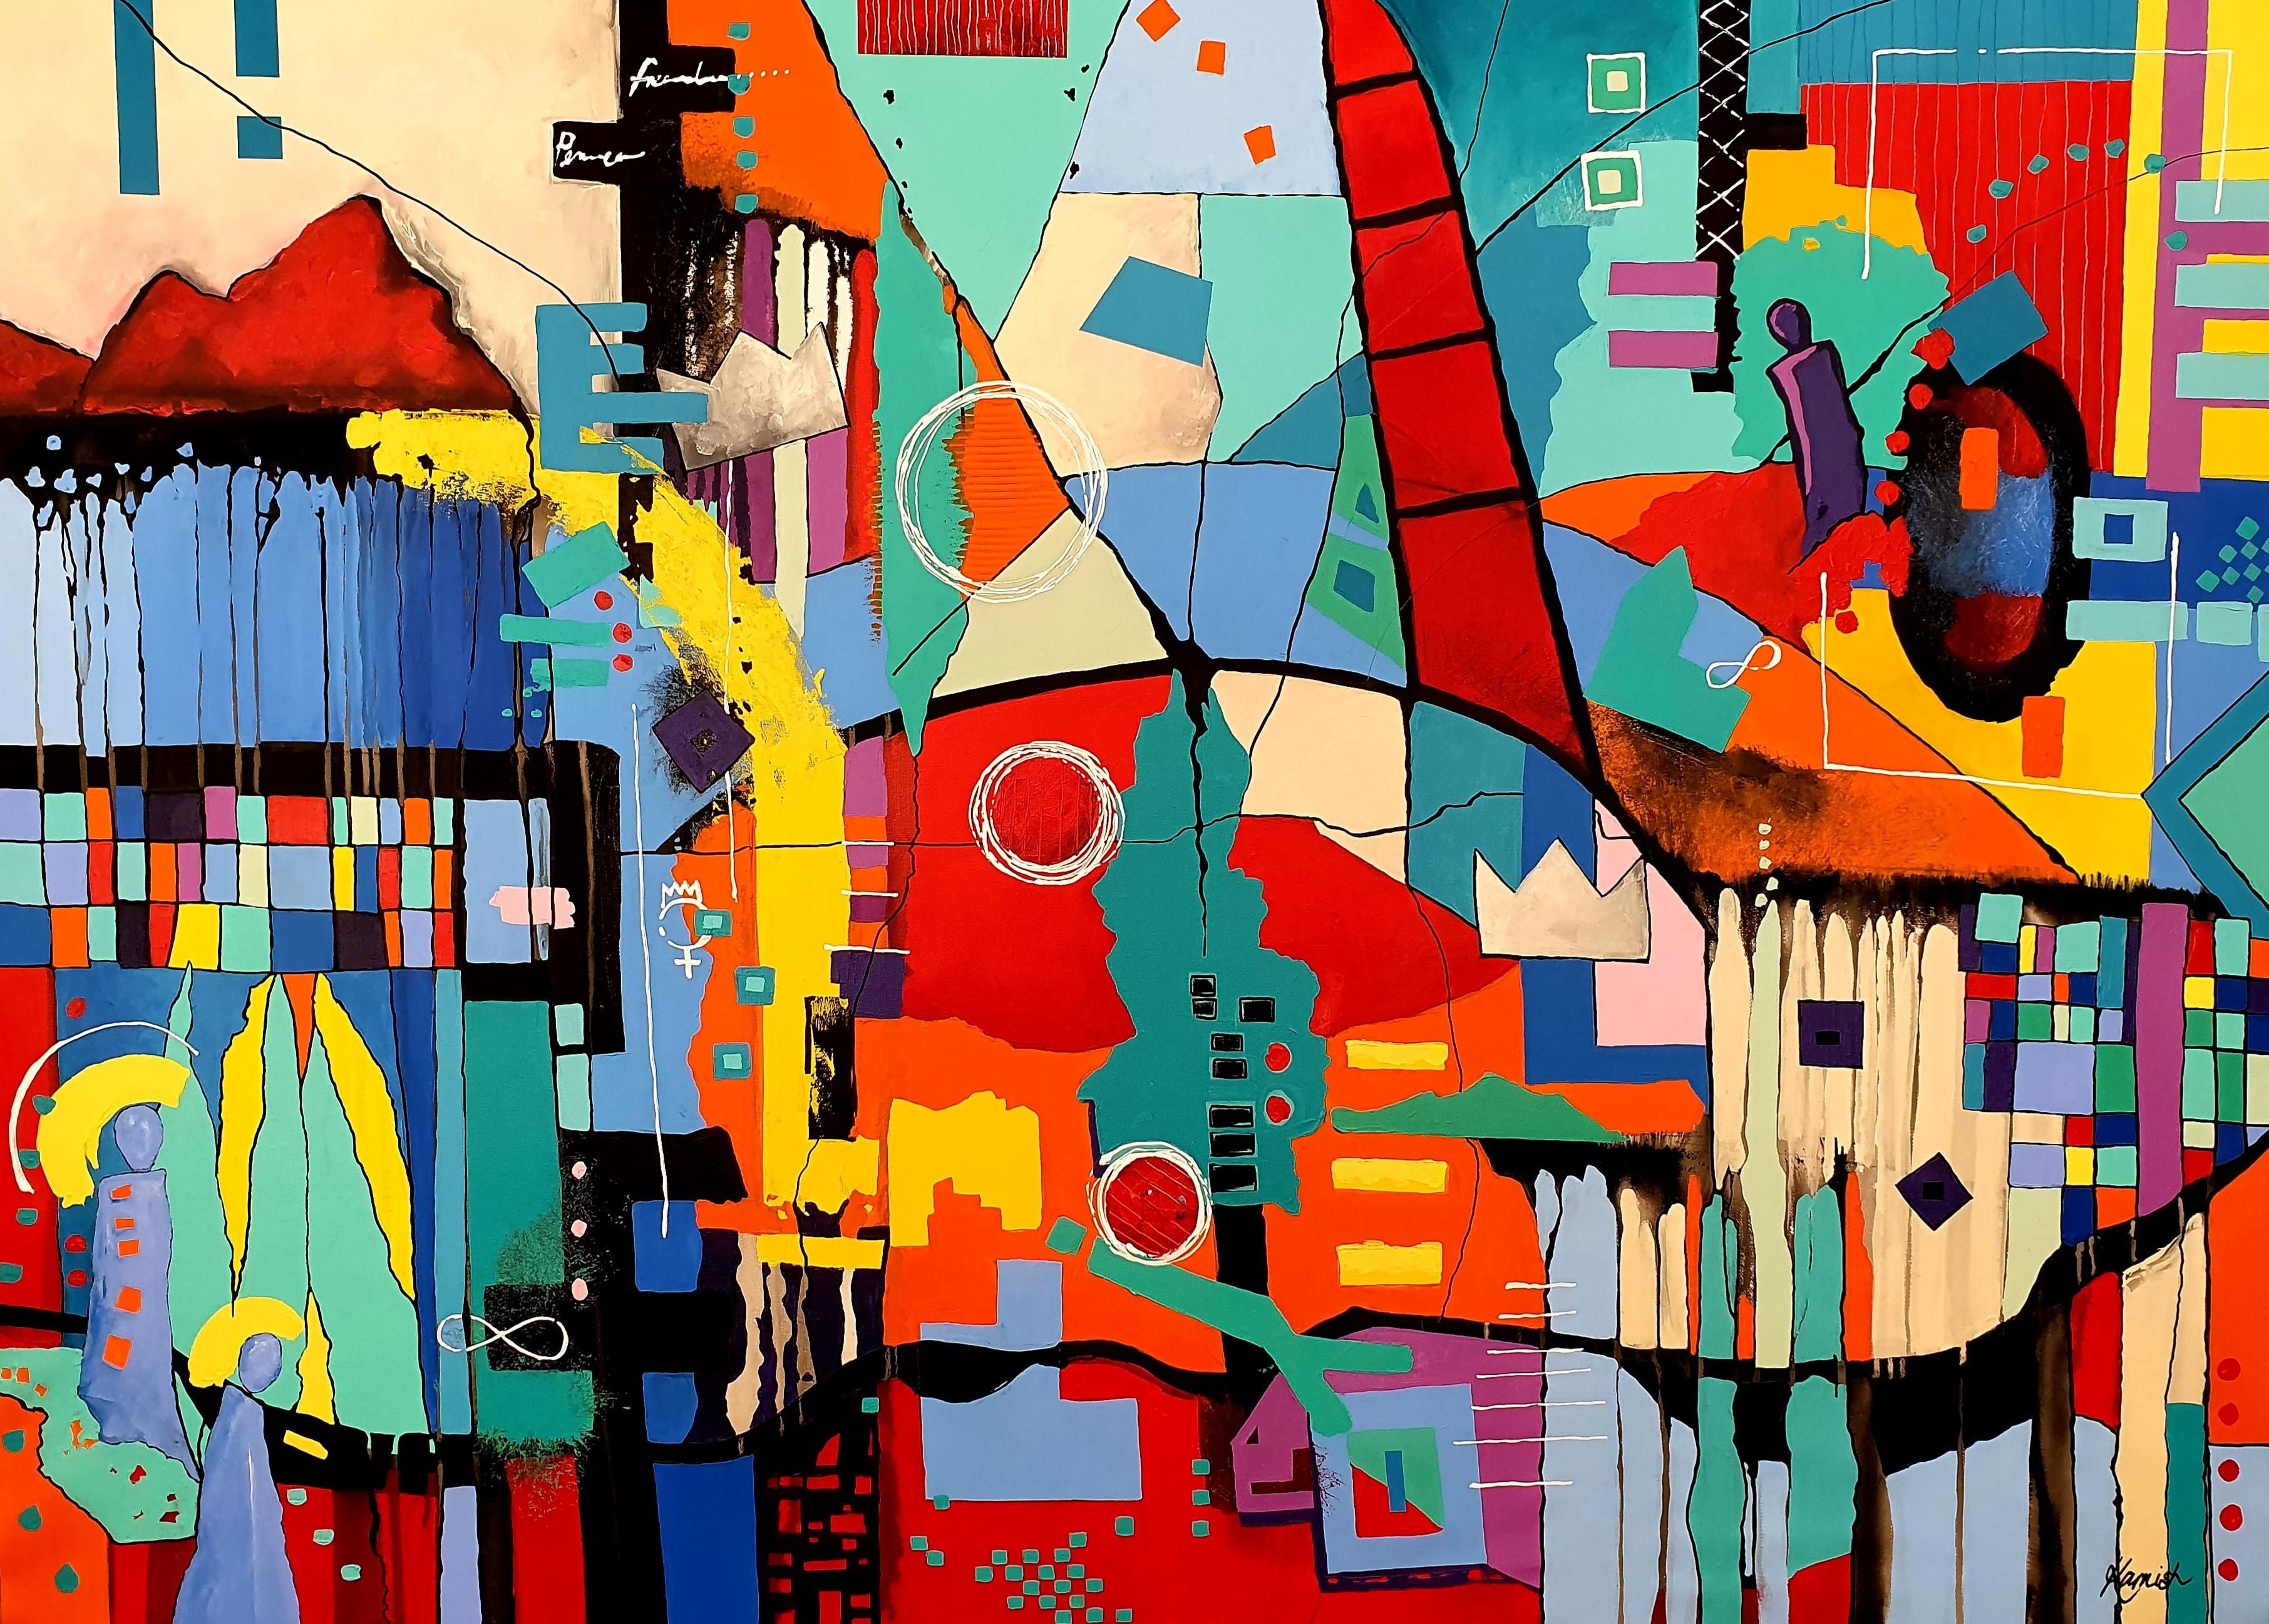 Karnish Art Abstract Painting – Ich bin König! - Bunte, auffällige, moderne, abstrakte, eindrucksvolle Investment-Intent- Joy